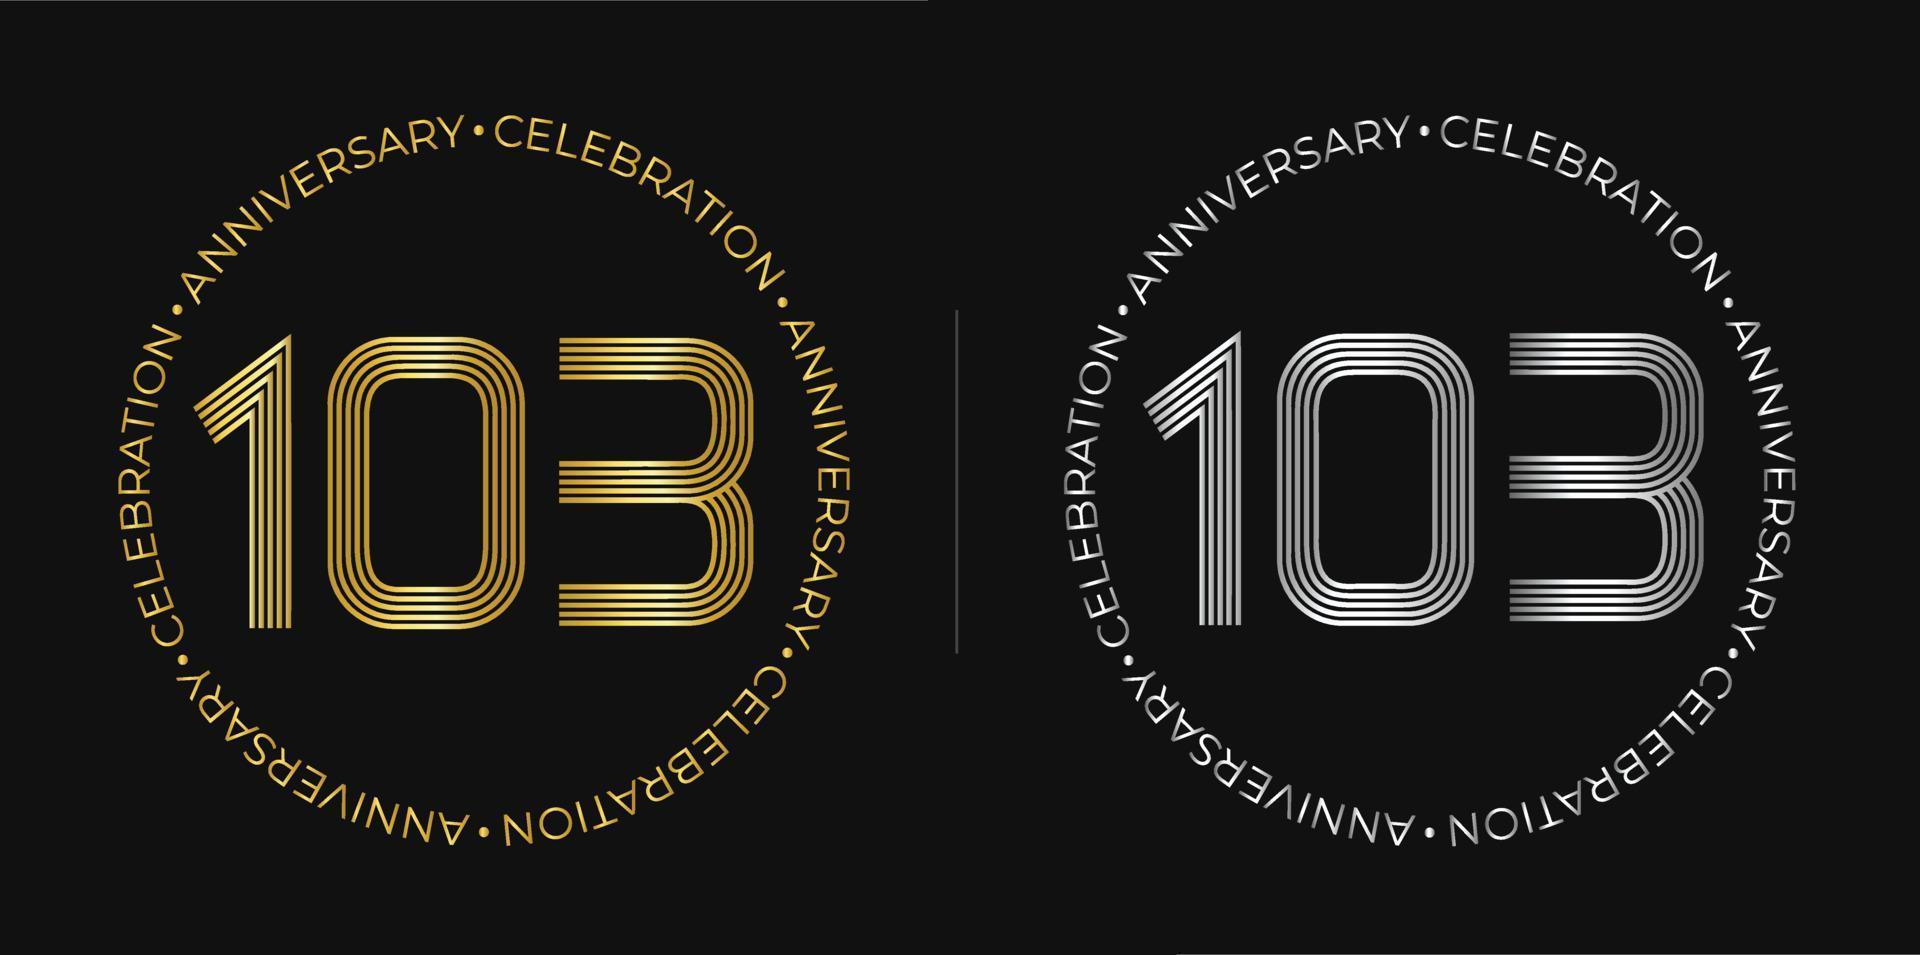 103e anniversaire. bannière de célébration d'anniversaire de cent trois ans aux couleurs dorées et argentées. logo circulaire avec un design original de chiffres aux lignes élégantes. vecteur